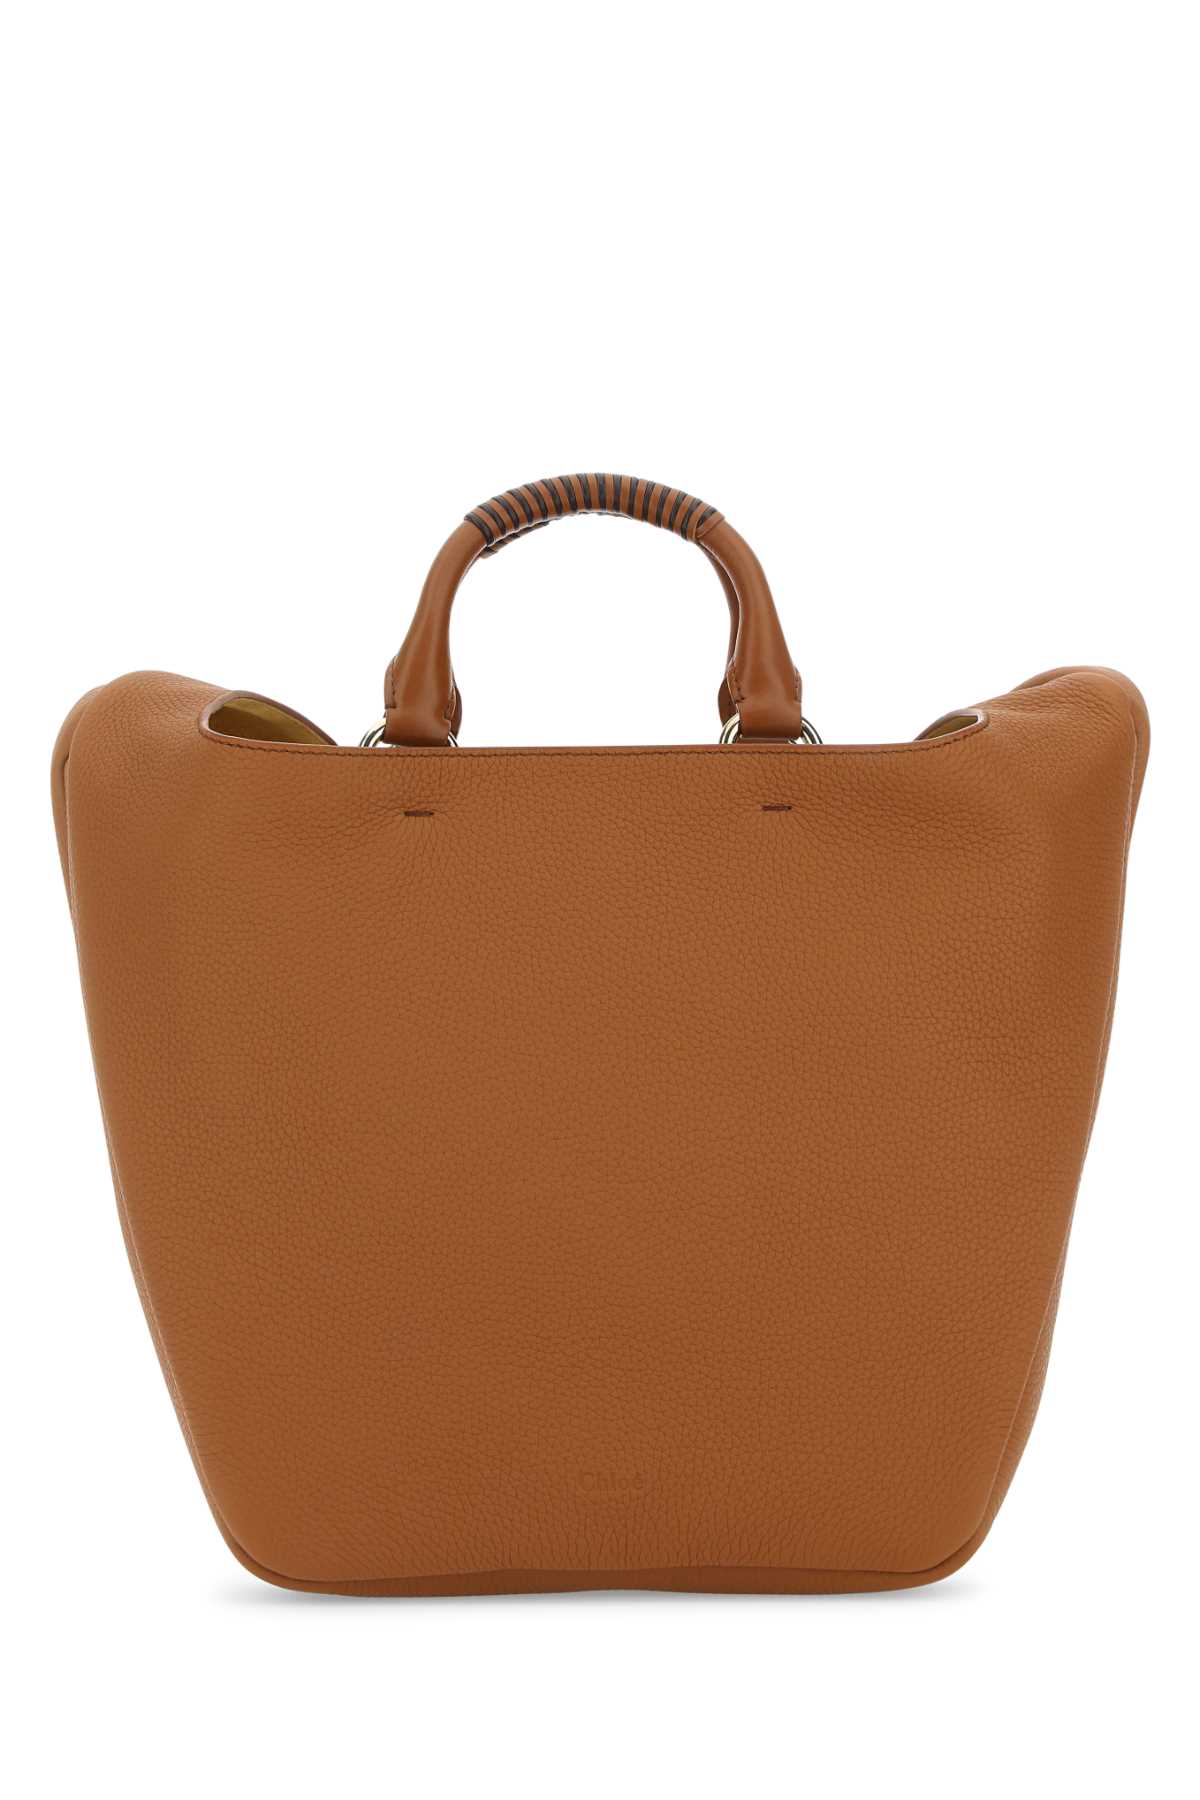 Chloé Caramel Leather Medium Deia Handbag